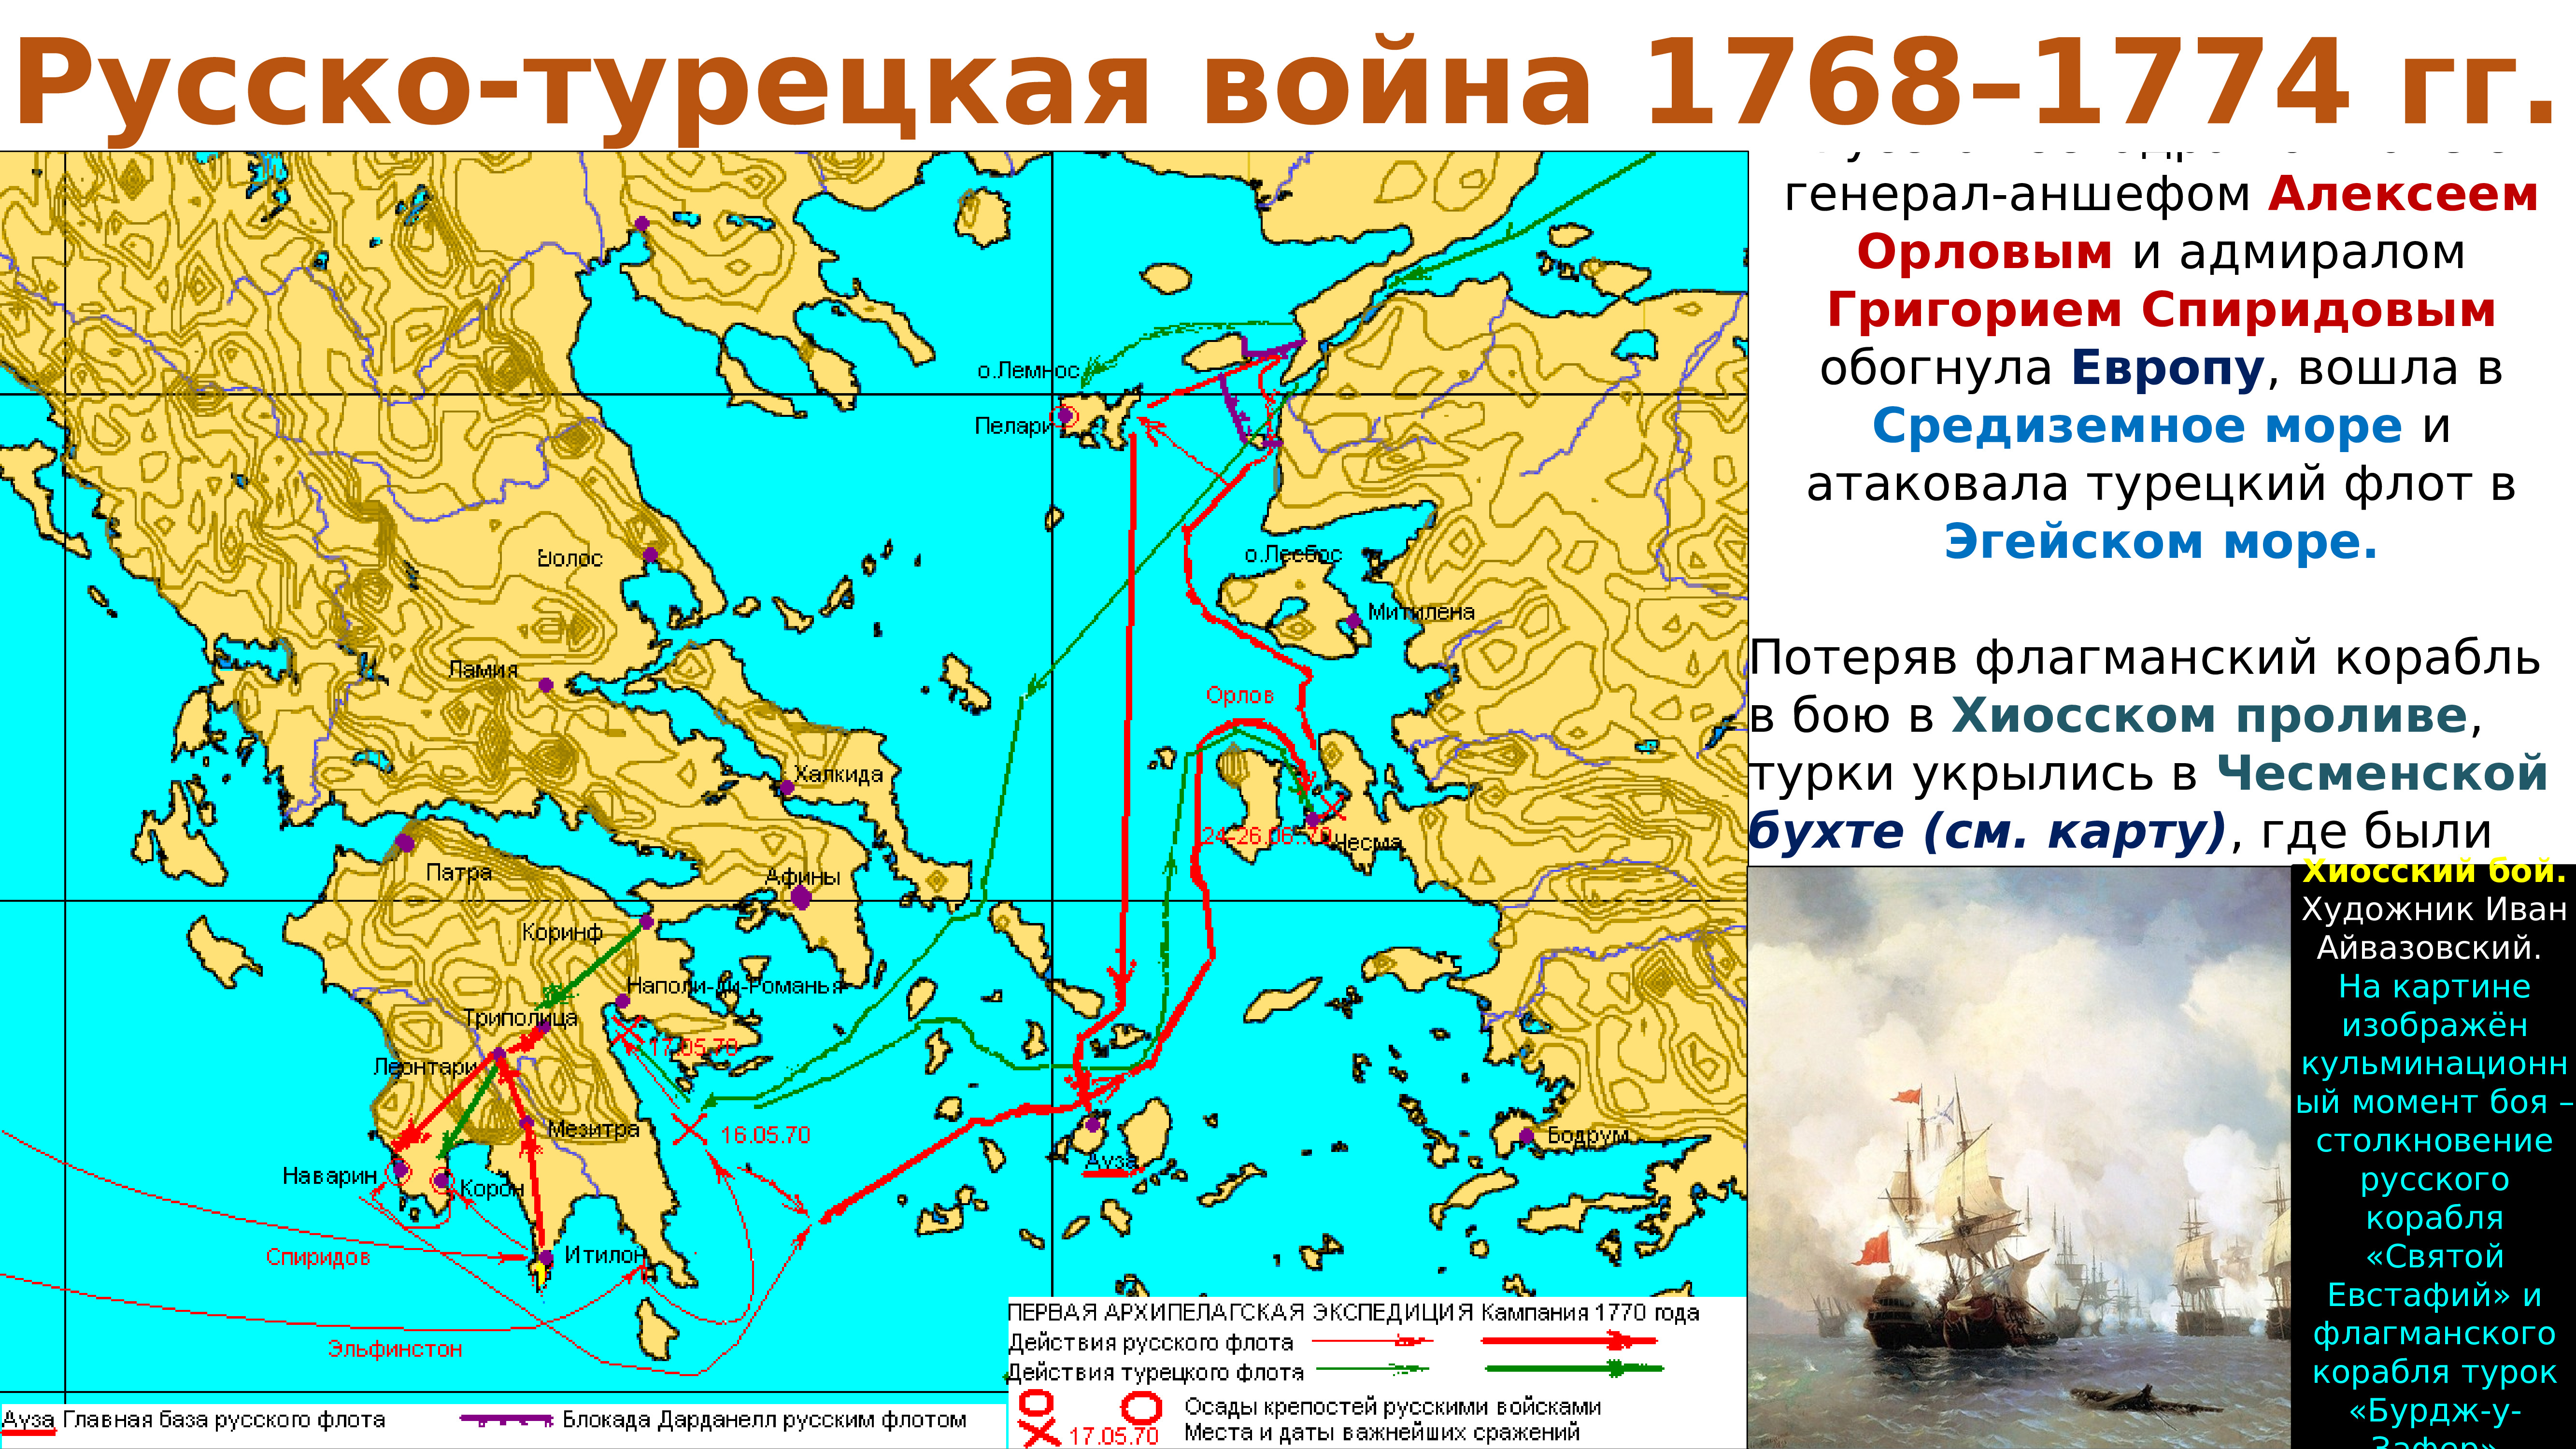 Архипелагская Экспедиция русского флота 1770